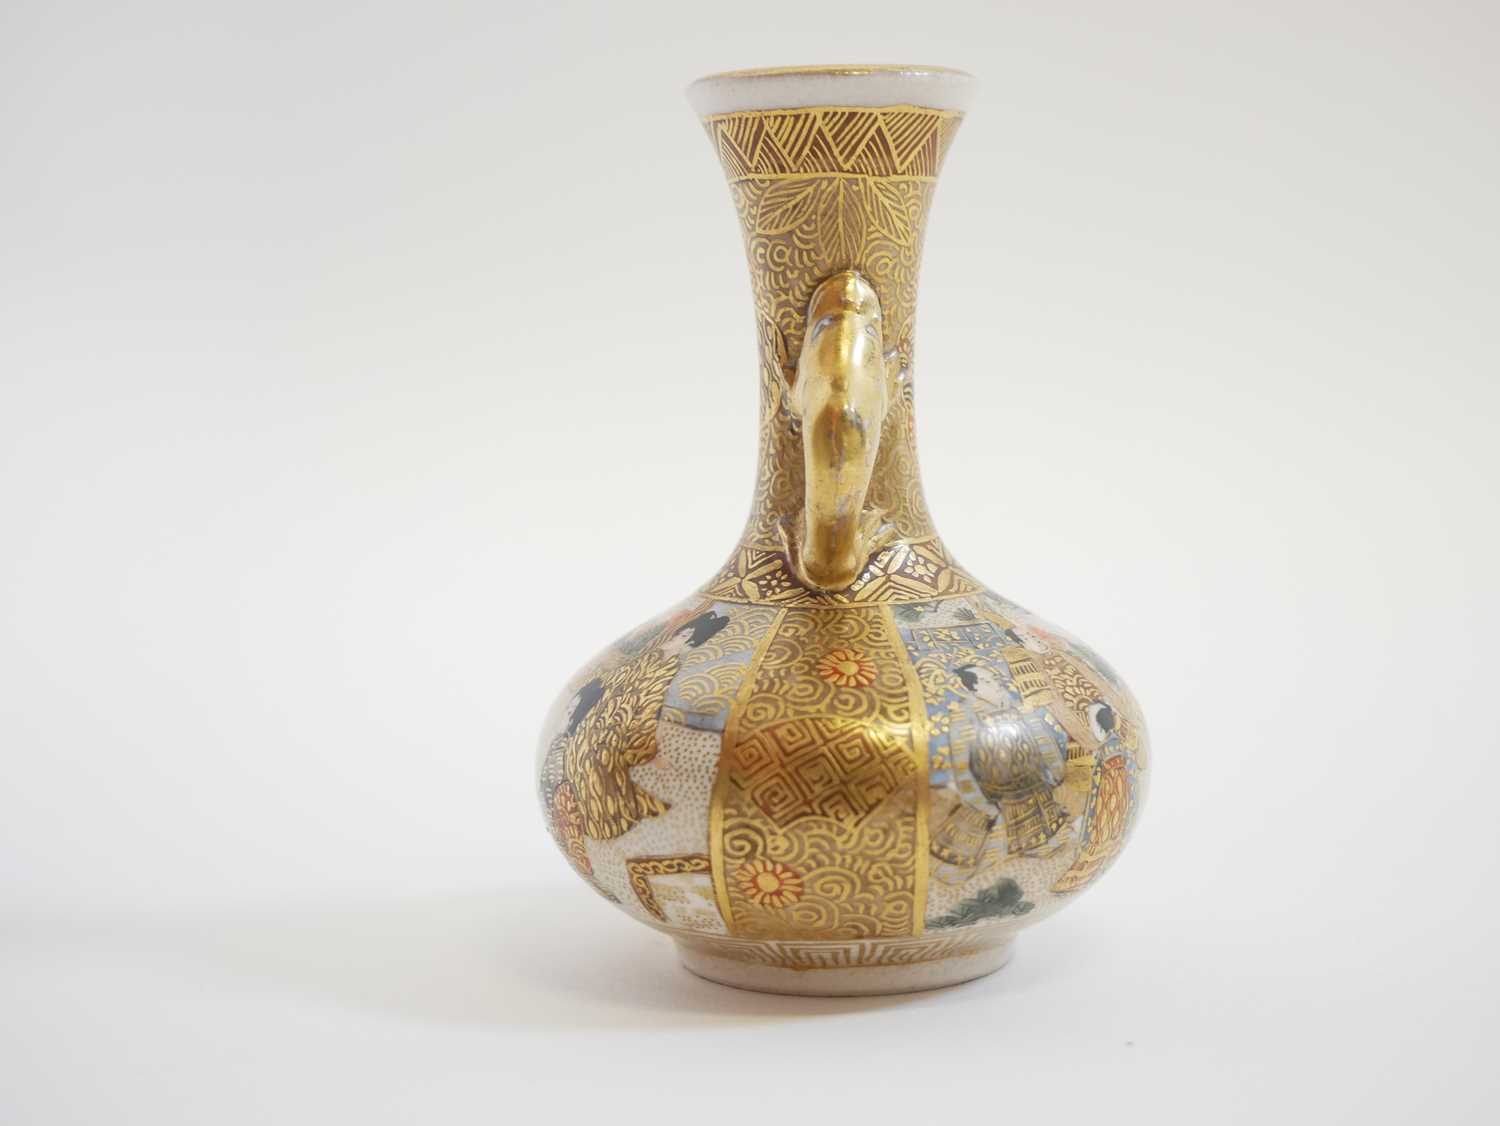 Miniature Japanese Satsuma twin handled vase - Image 2 of 4